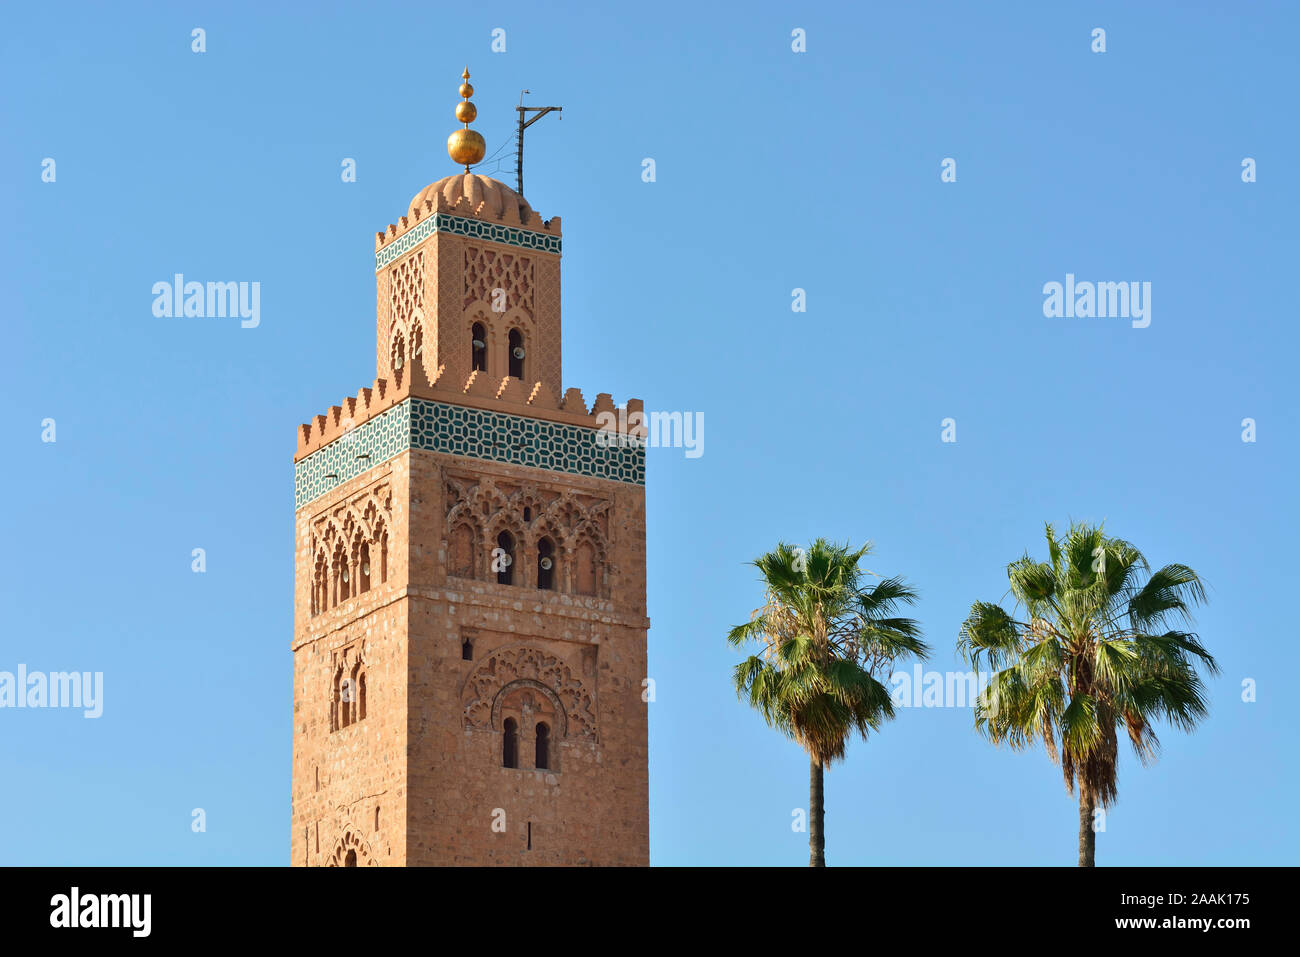 Il minareto di Koutoubia, alto 77 metri (253 piedi). Fu completata sotto il regno di Almohad Caliph Yaqub al-Mansur. Marrakech, Marocco Foto Stock